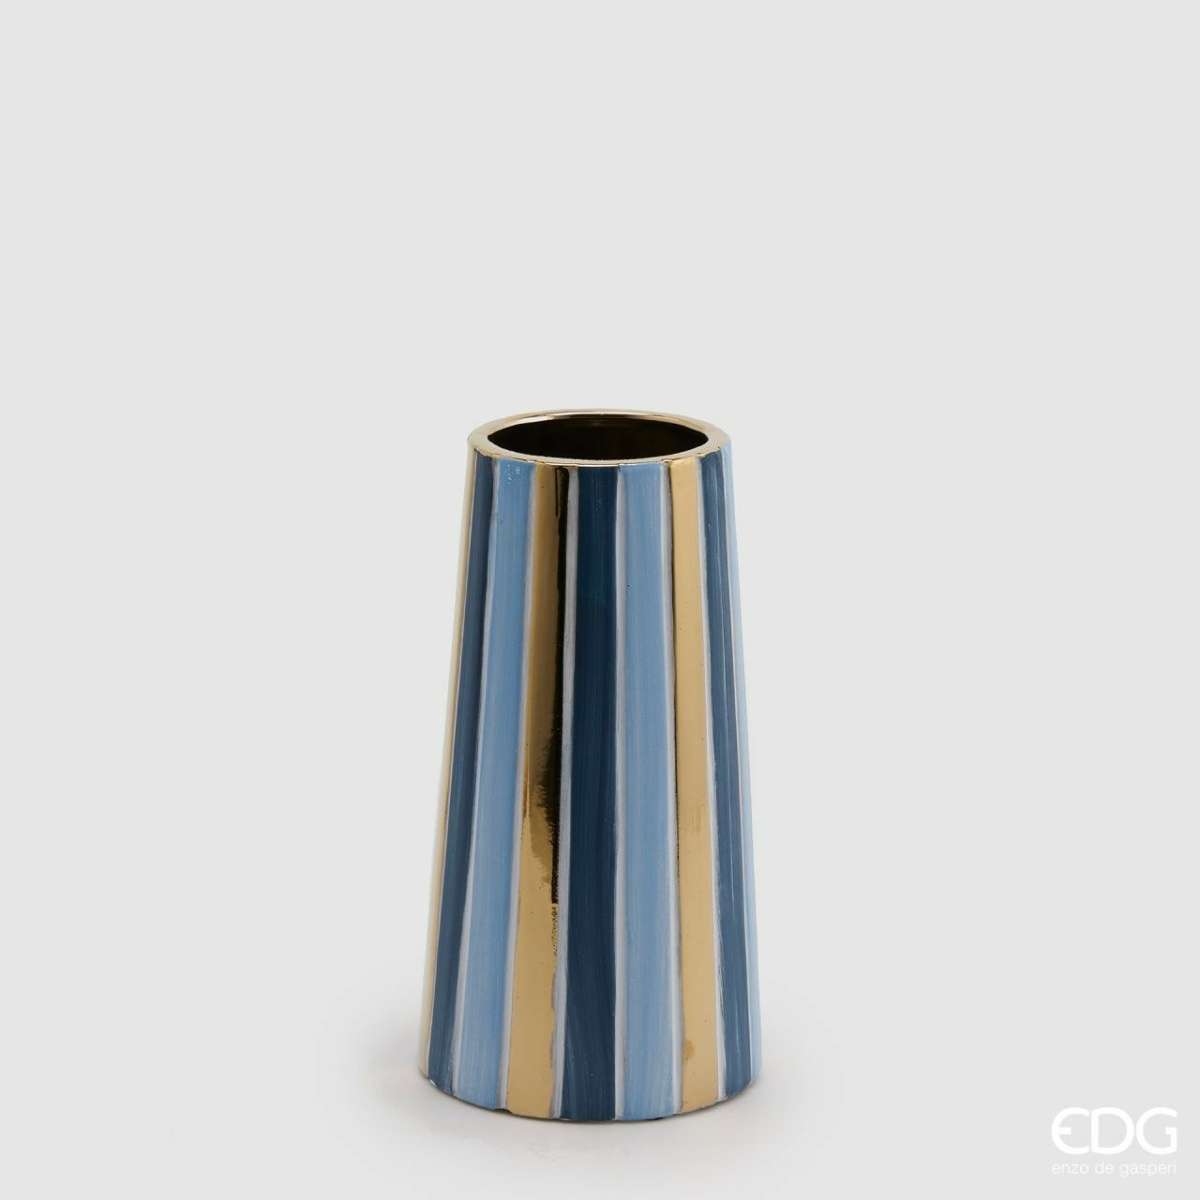 Immagine del prodotto Vaso Righe Bicolor Oro/Azzurro in Ceramica (2 Misure) | EDG Enzo De Gasperi